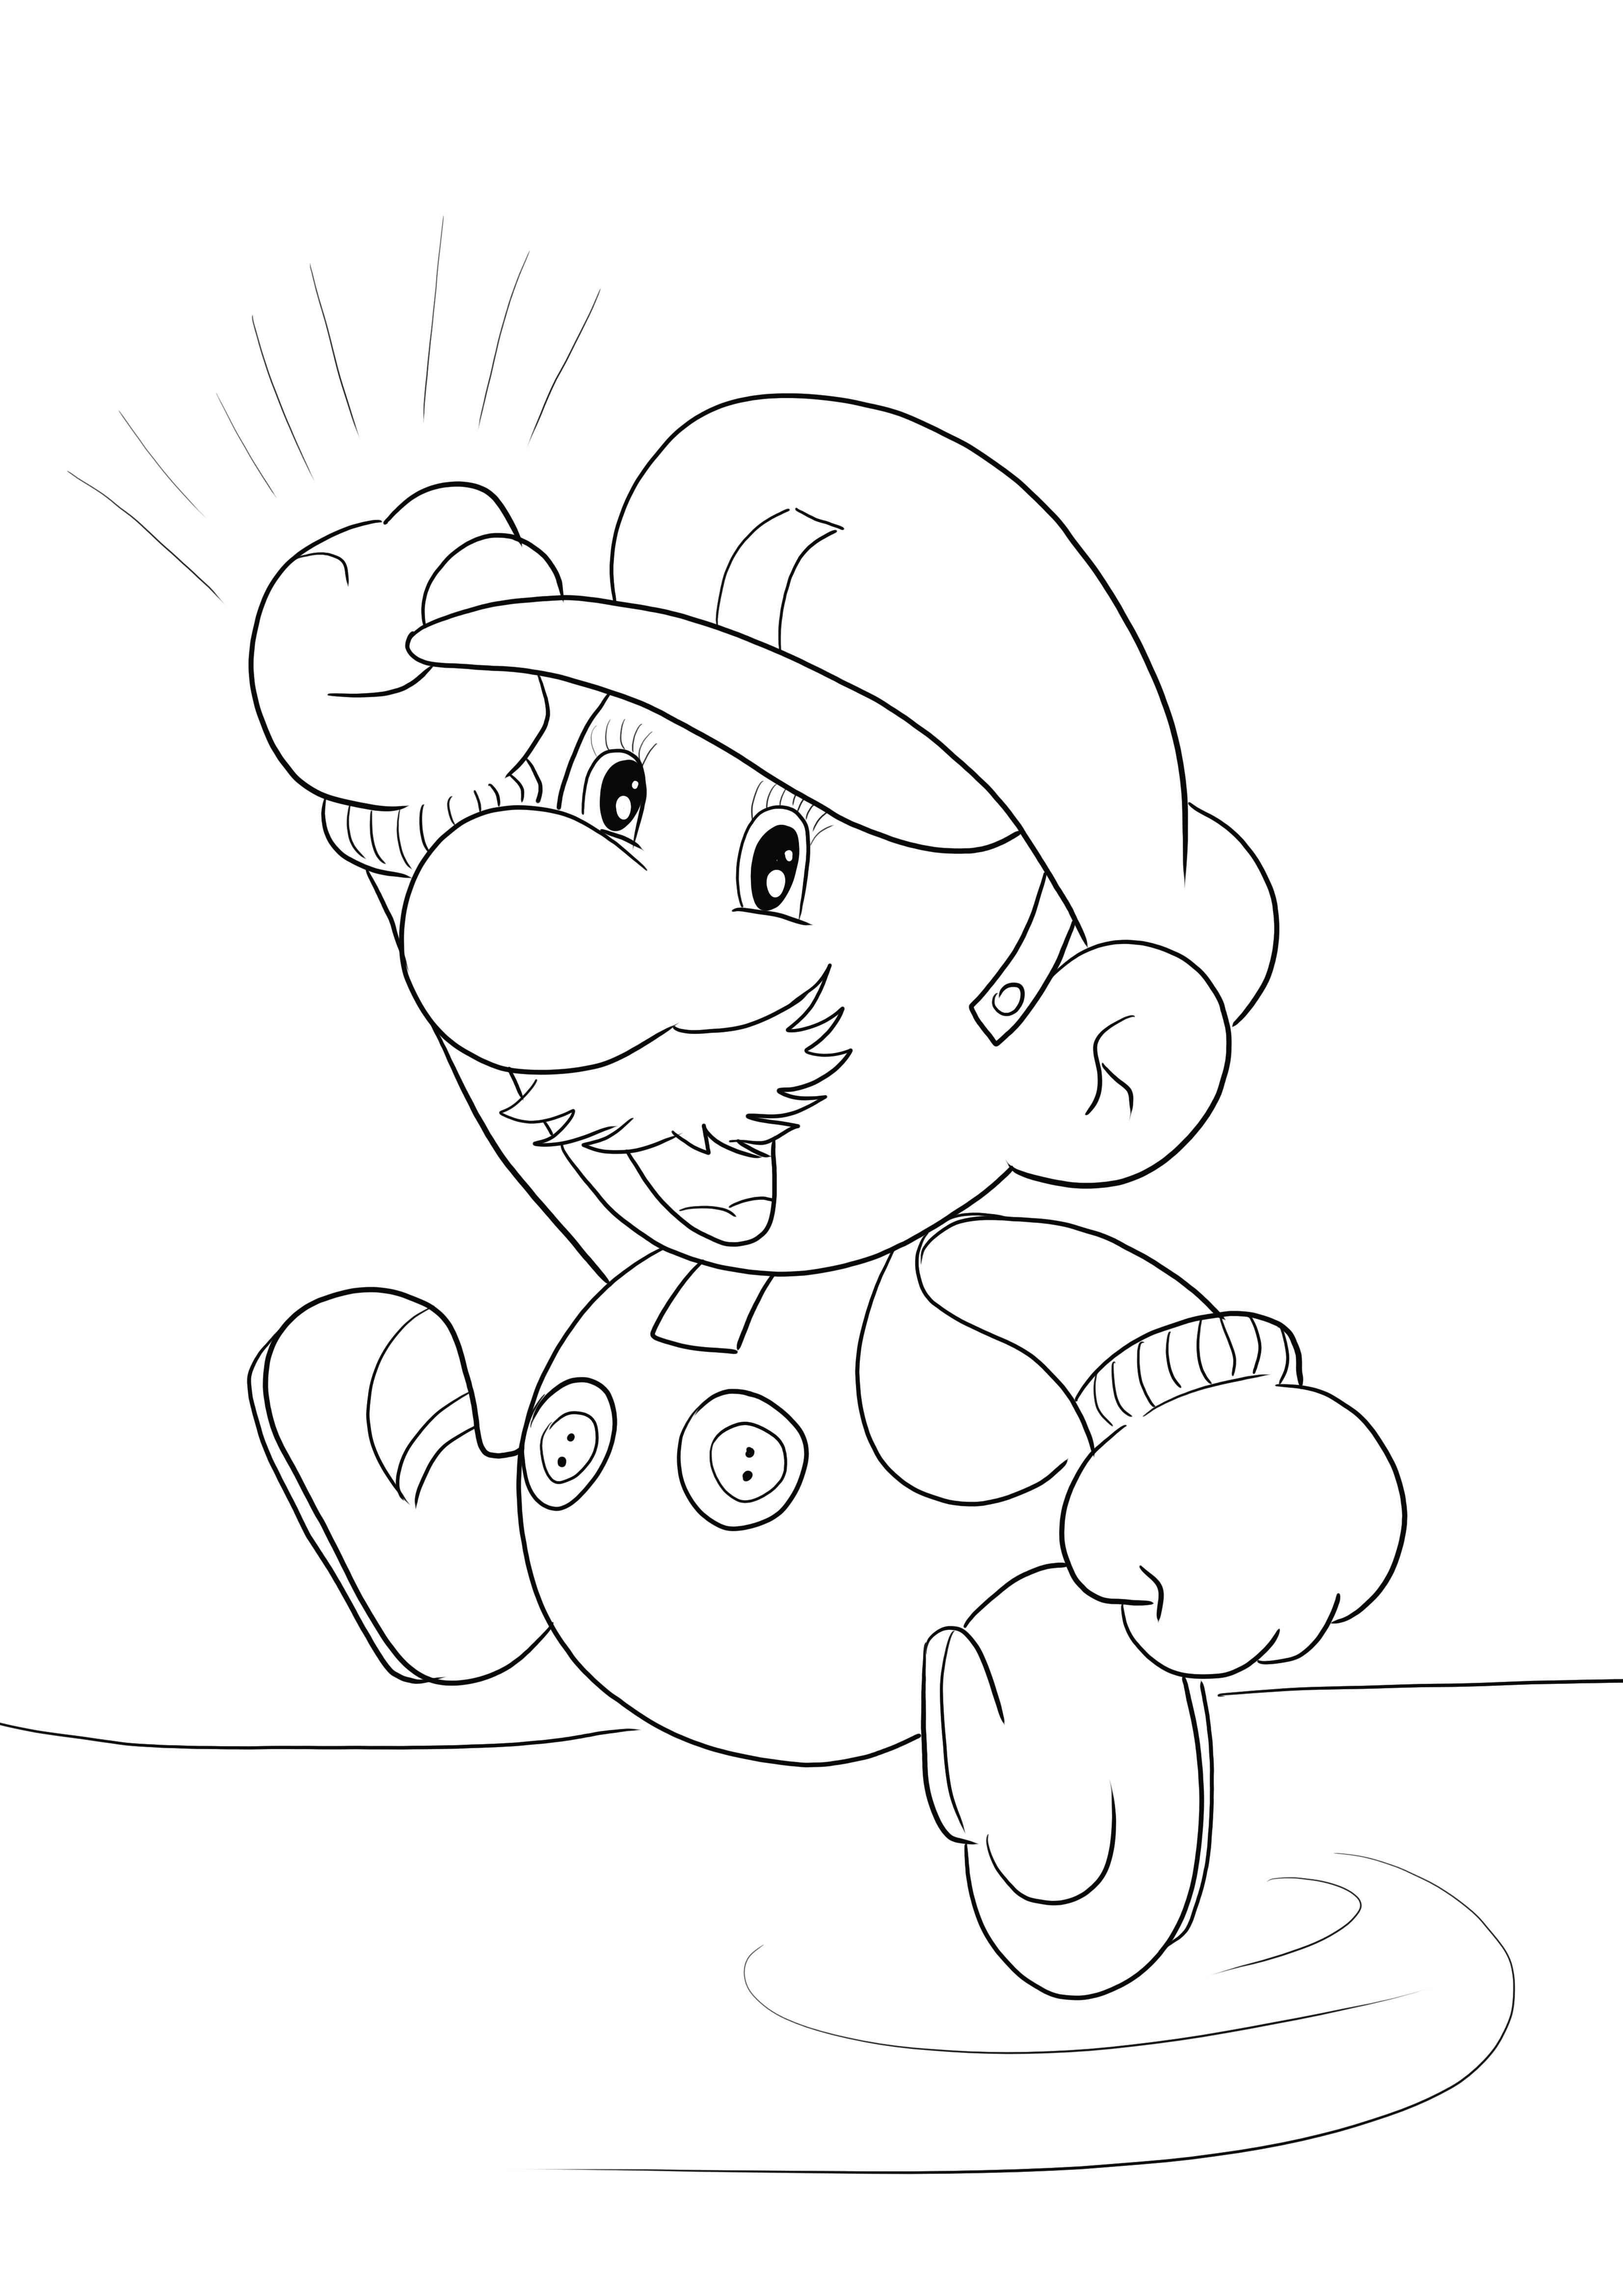 Imagem para colorir do Mario em papel, imprimível gratuitamente para colorir e aprender com diversão